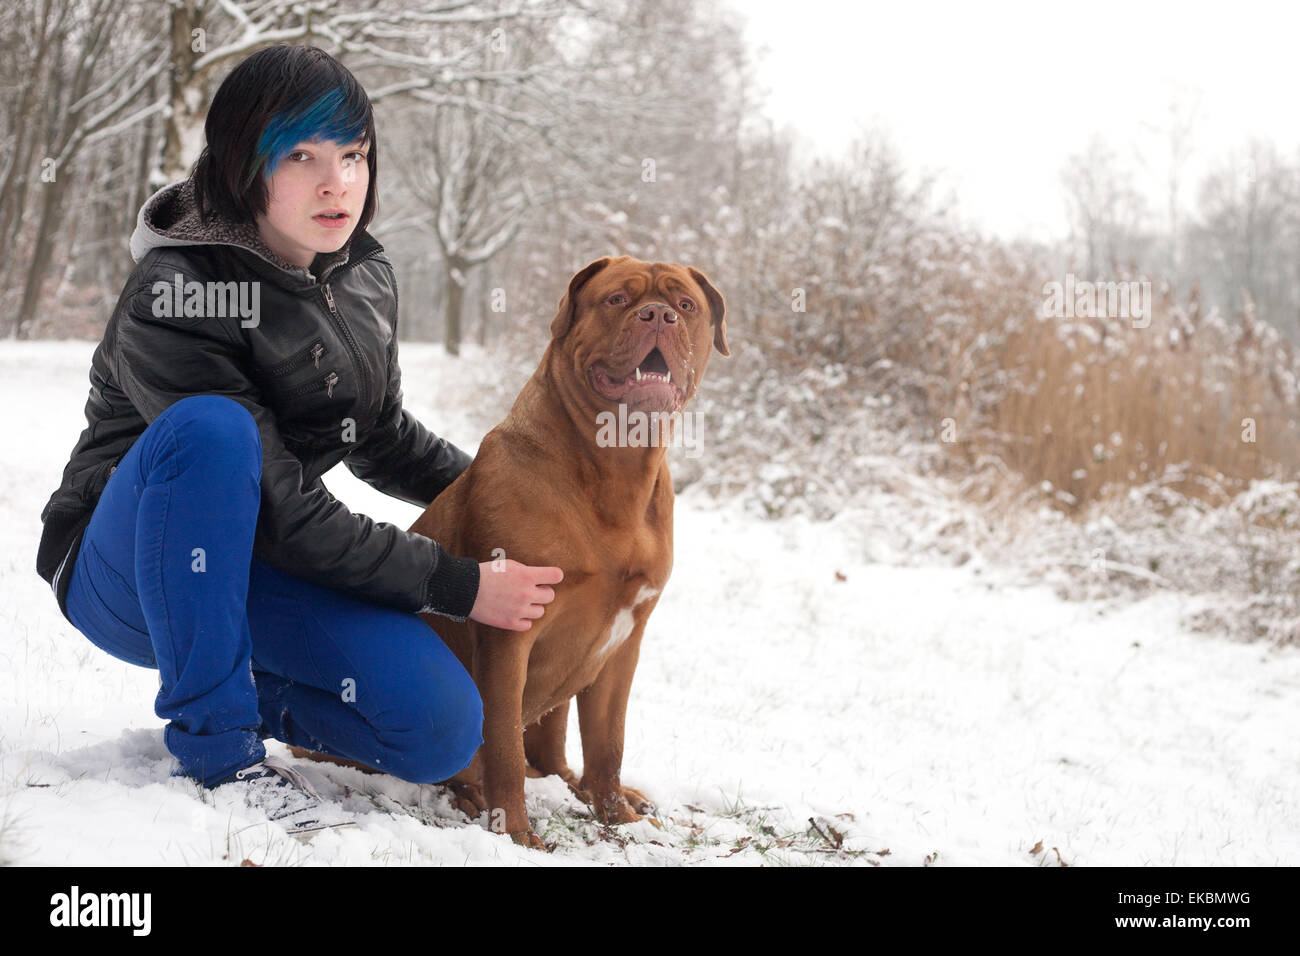 Emo junge und sein Hund warten Stockfotografie - Alamy